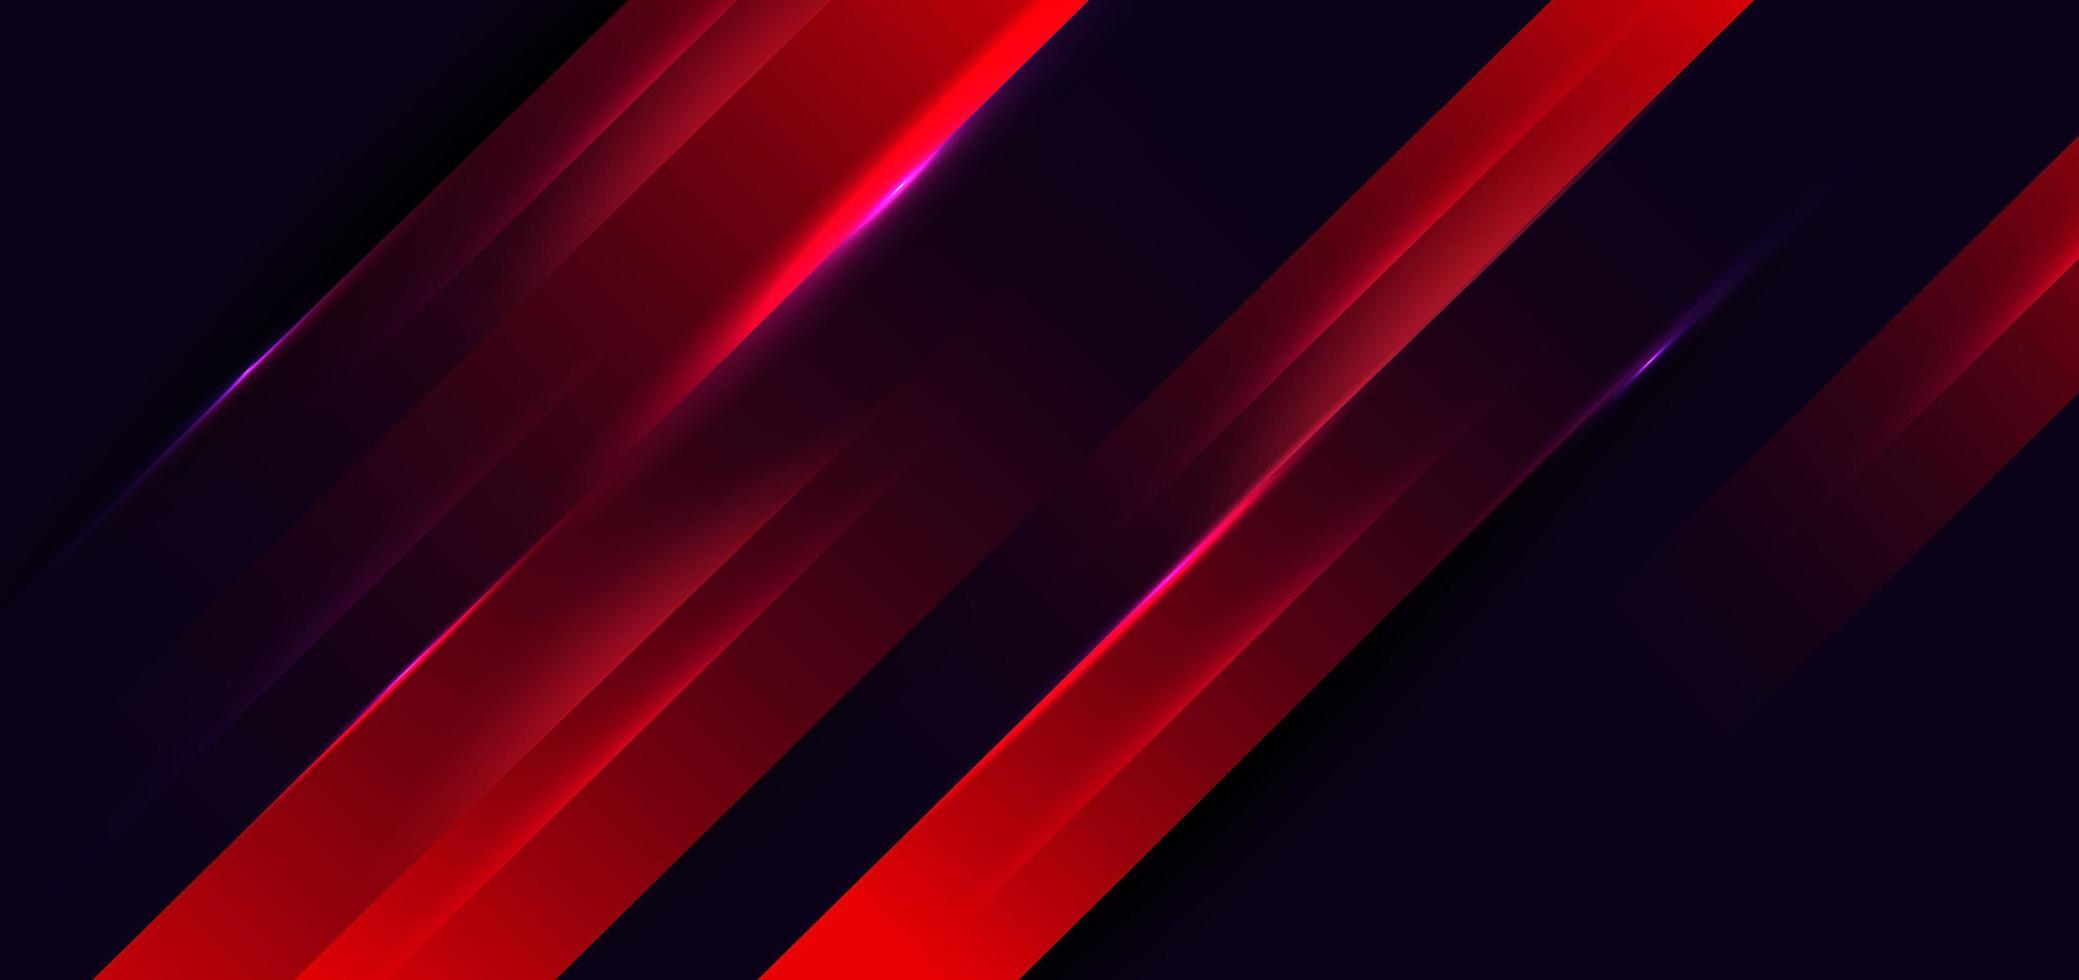 diagonale élégante rouge moderne abstraite sur fond sombre avec éclairage. vecteur